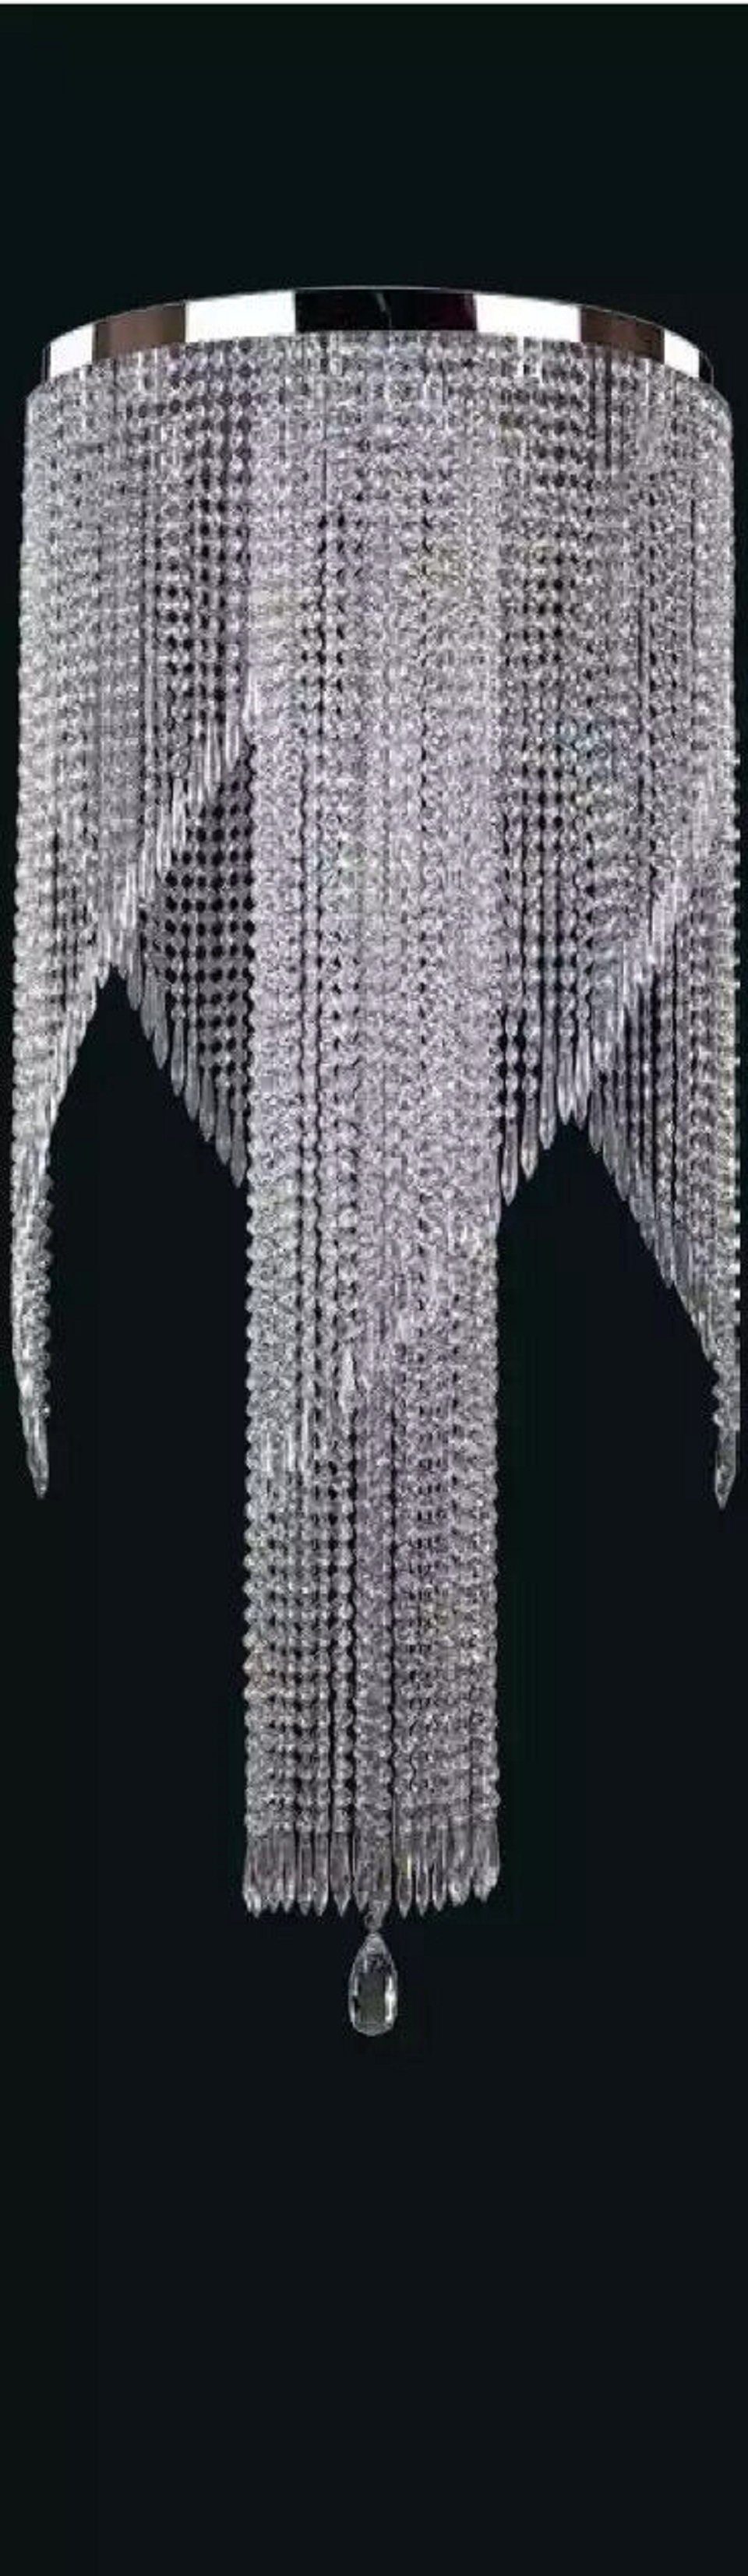 JVmoebel Kronleuchter Kristall Hängeleuchte Kronleuchter Deckenleuchte 60x140, Leuchtmittel wechselbar, Made in Europe